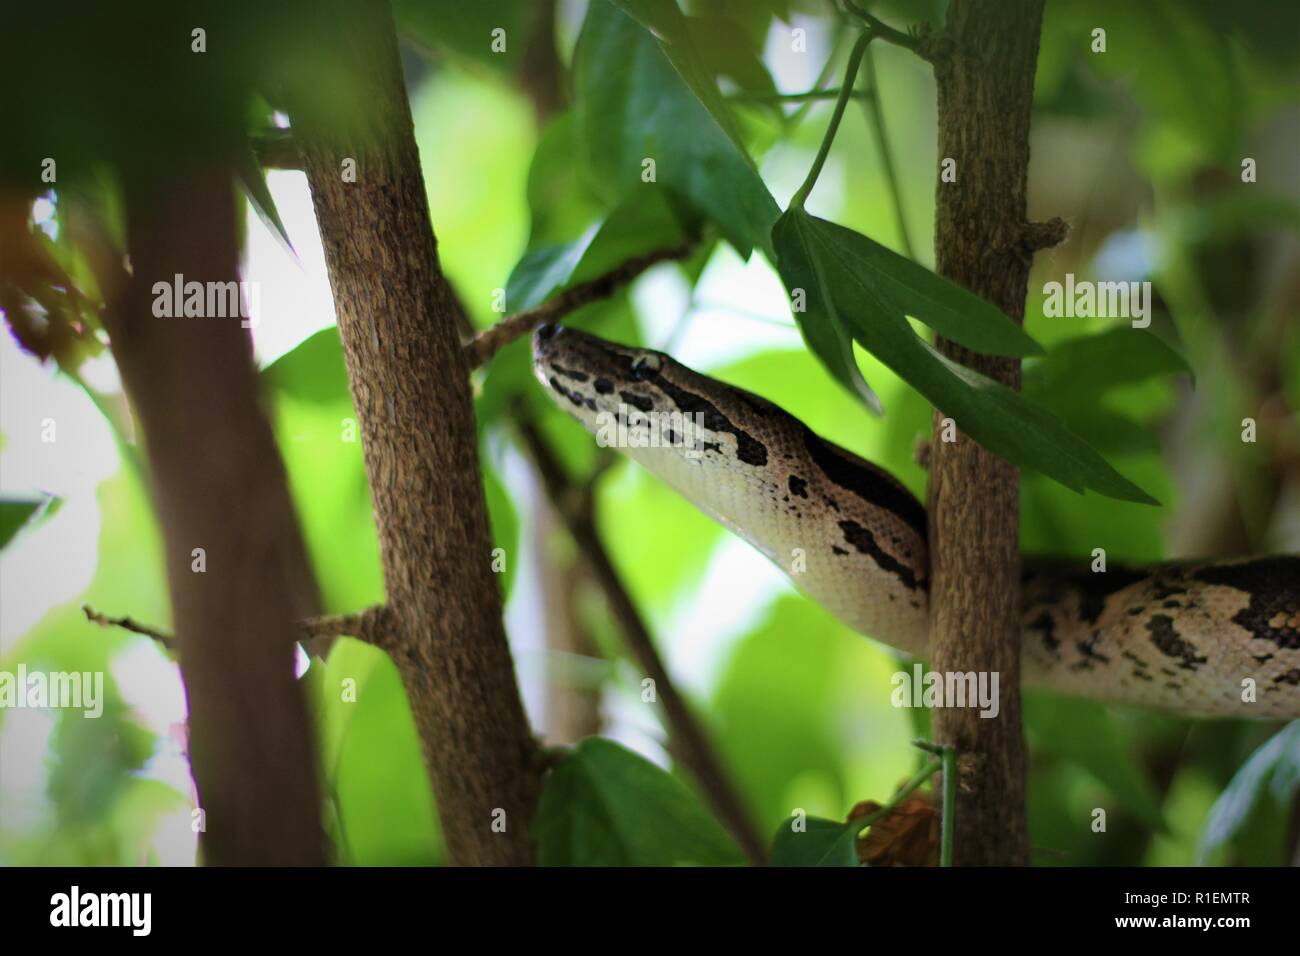 Dumerils Boa in a tree Stock Photo